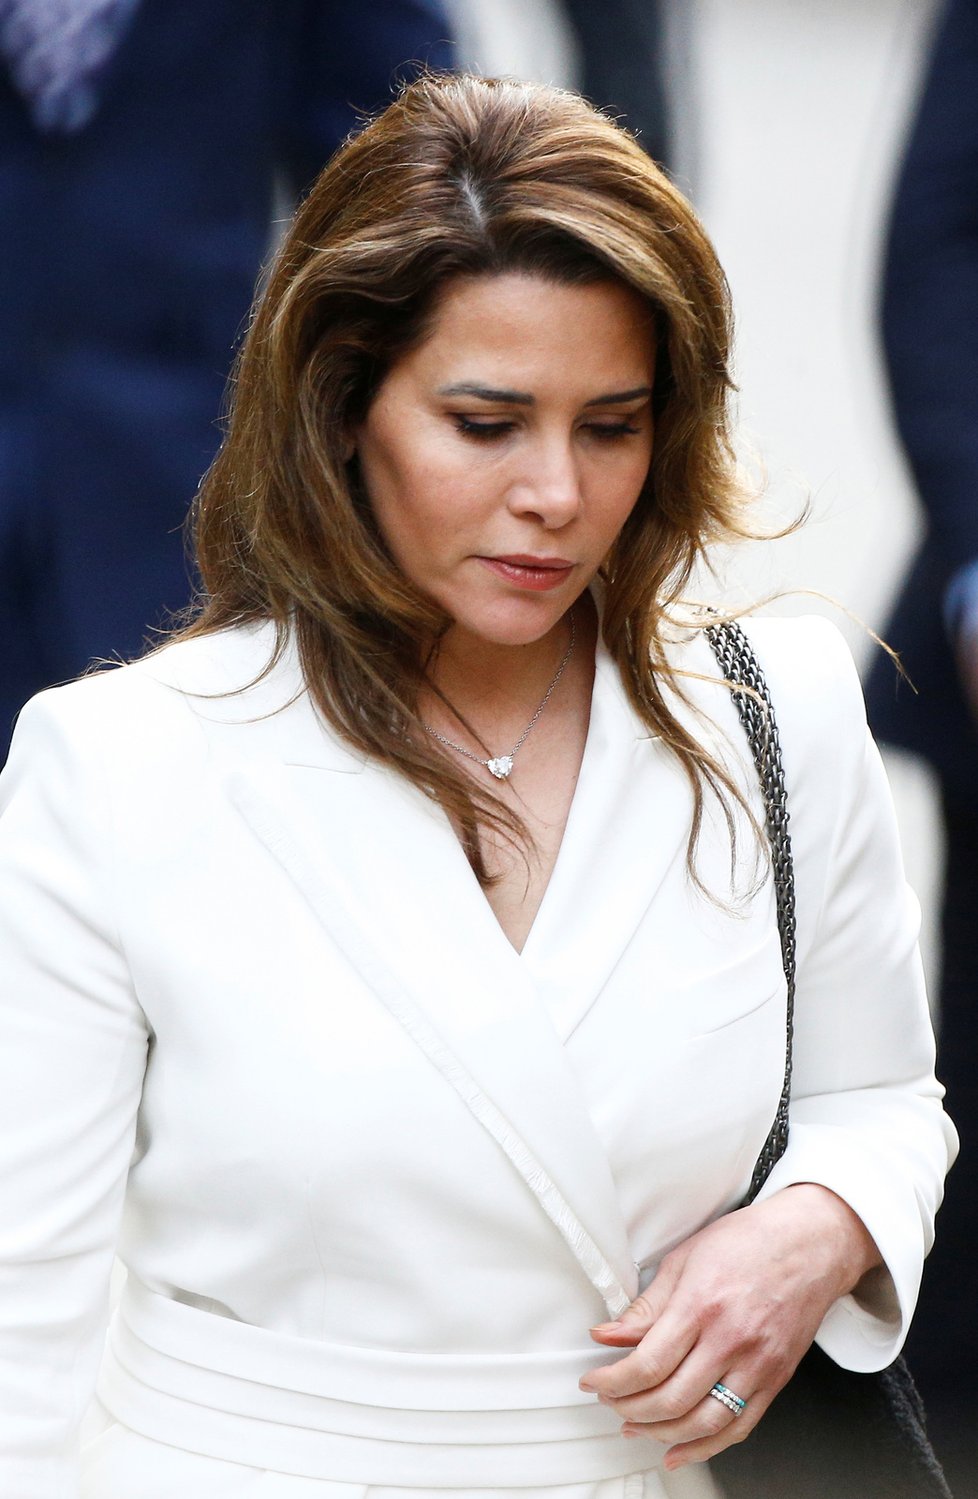 Jordánská princezna Hajá bint al-Husajn u Odvolacího soudu v Londýně, (26.02.2020).